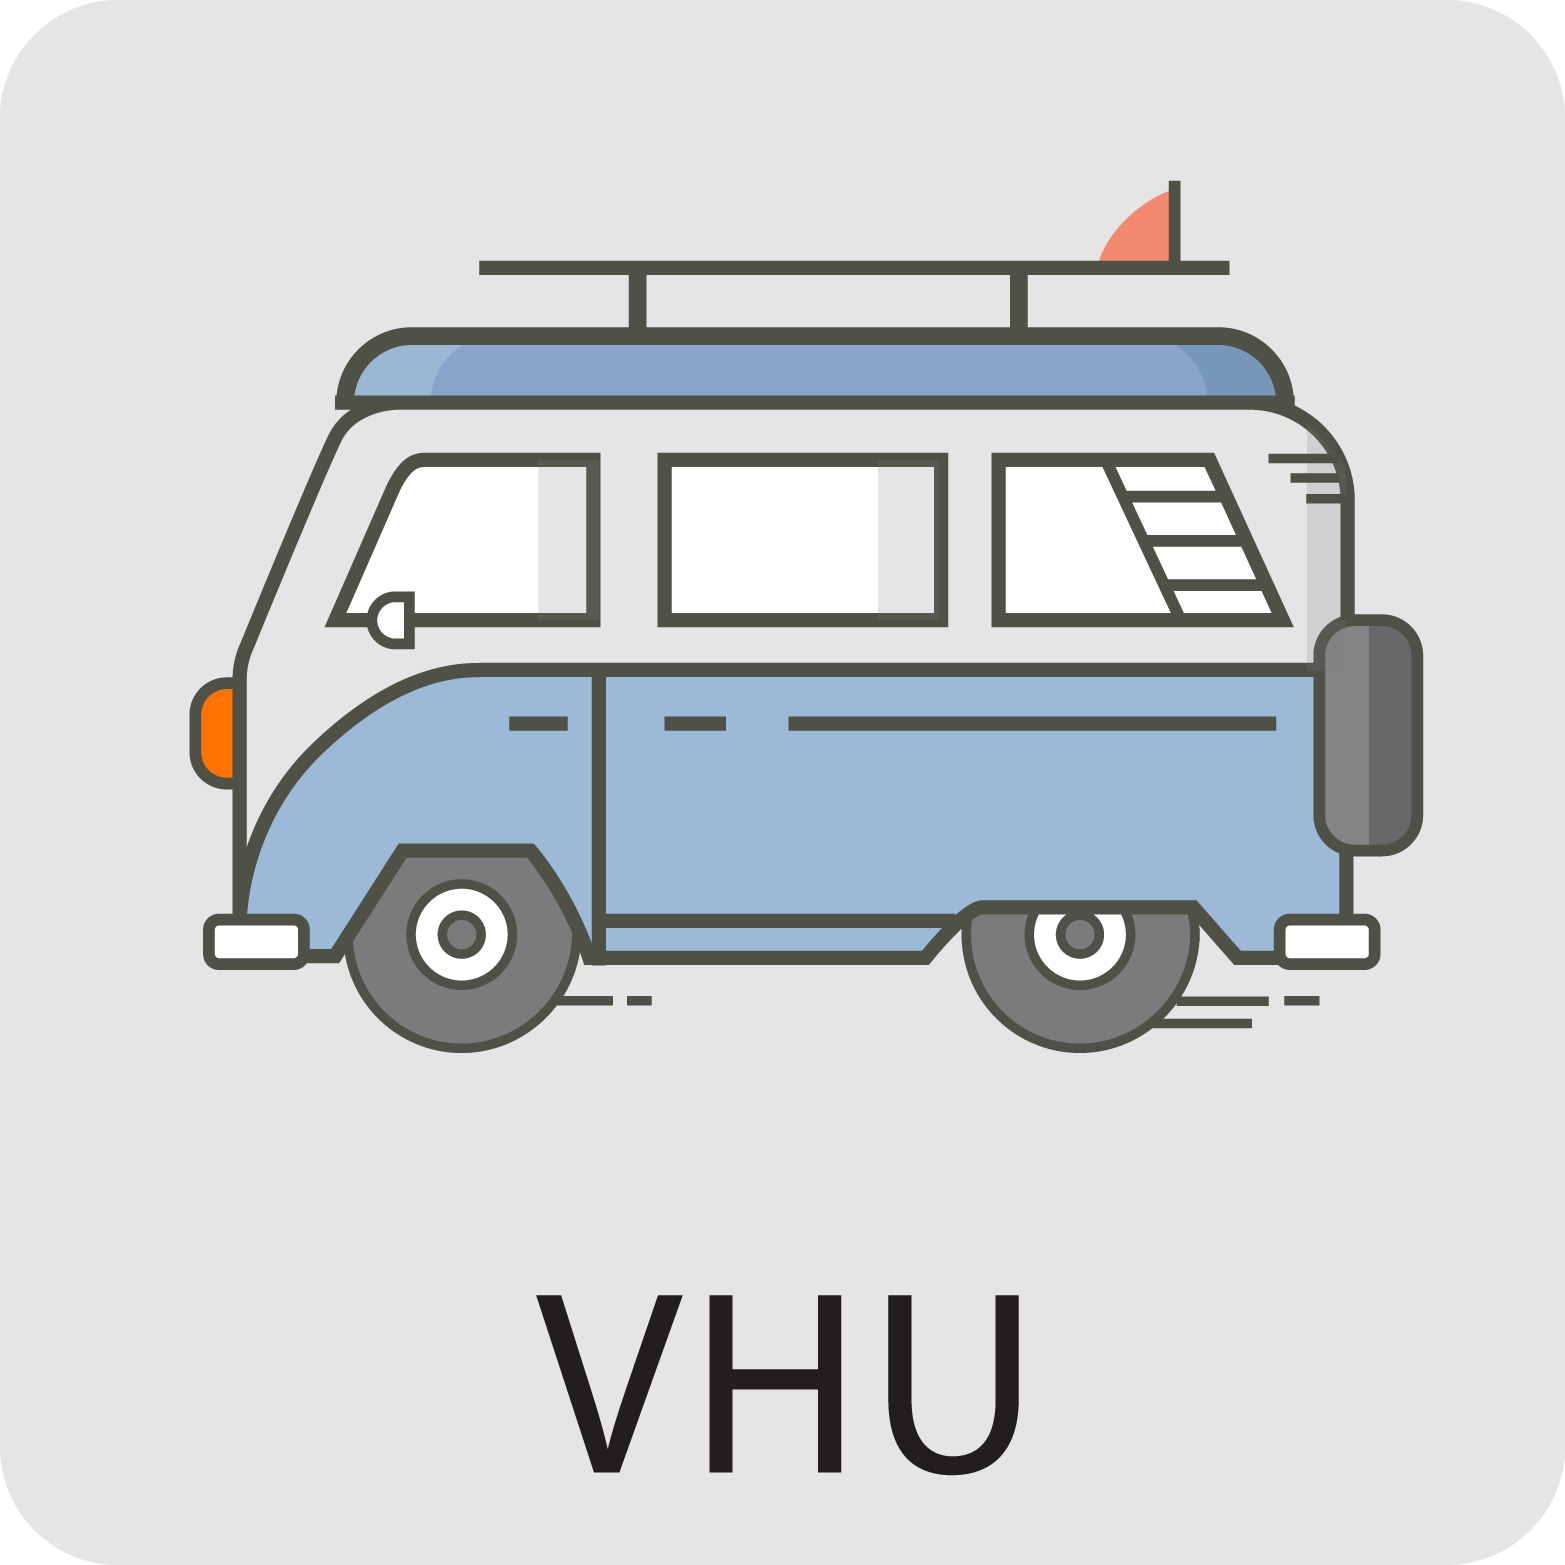 éhicules hors d'usage (VHU)